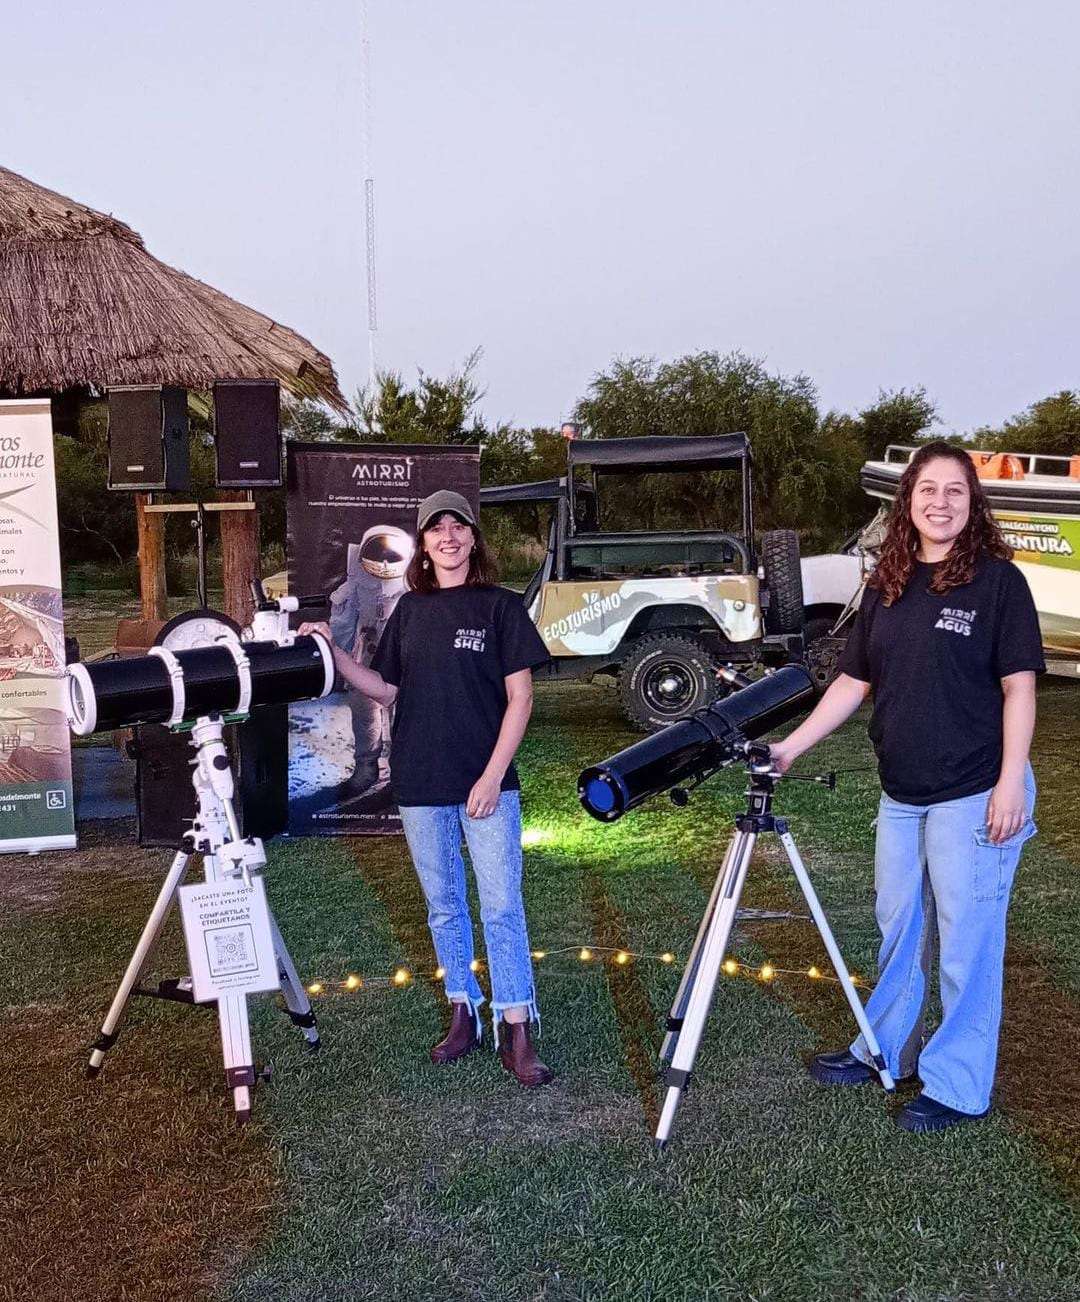 Sheila Rougier y Agustina Collazo son las encargadas de mostrar las estrellas a todos los interesados en el cielo nocturno. Foto: Instagram @astroturismo.mirri